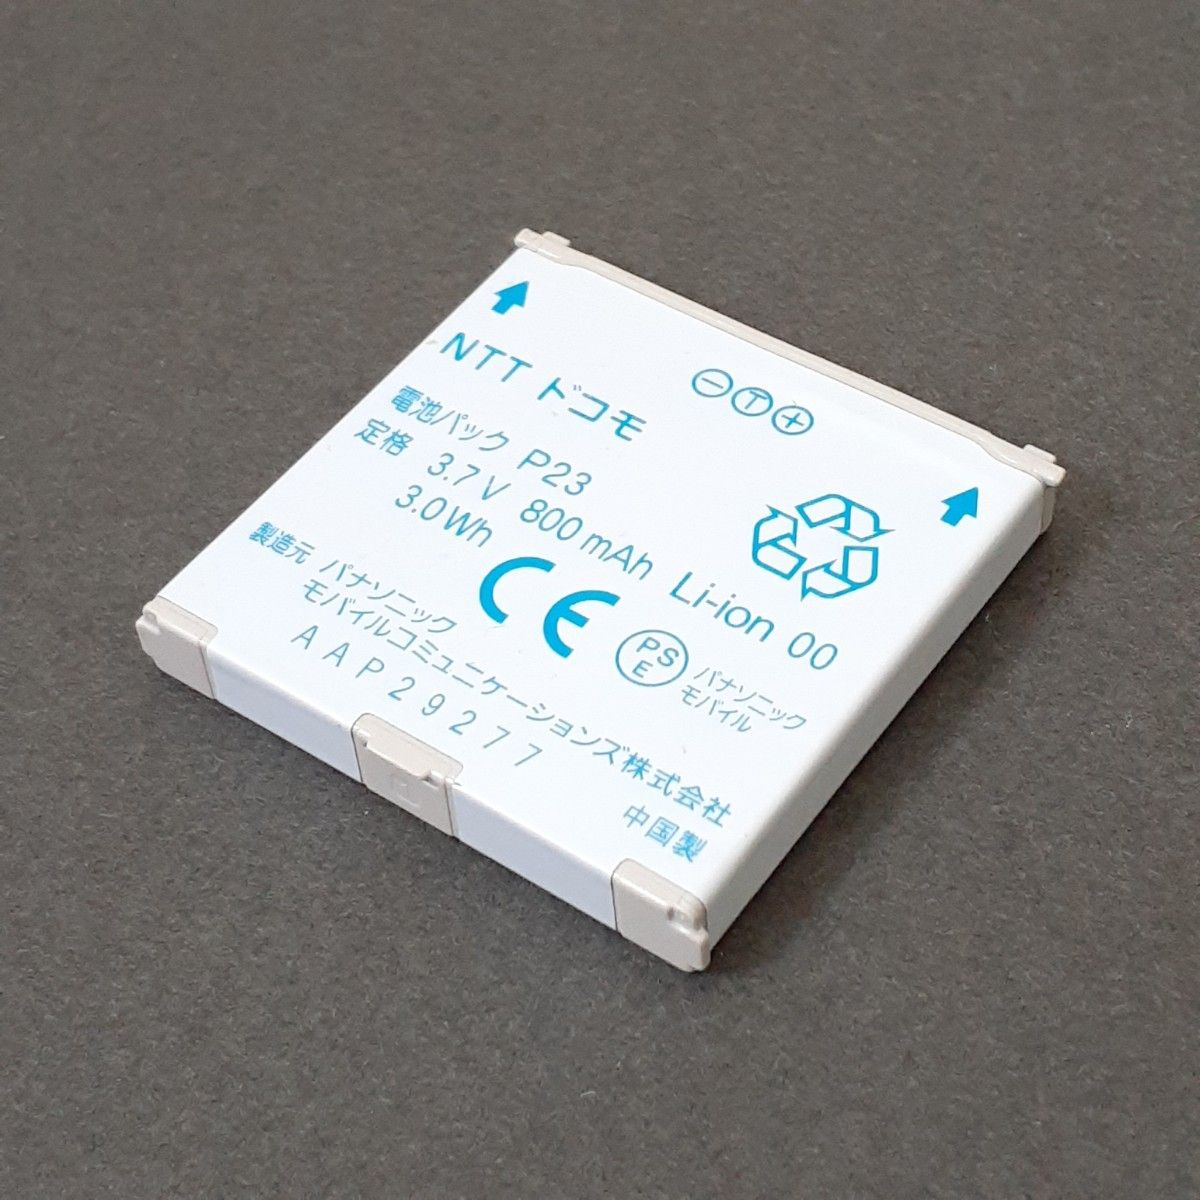 NTT ドコモ 電池パック P23 PSE認証マーク付き 充電確認済みの中古品